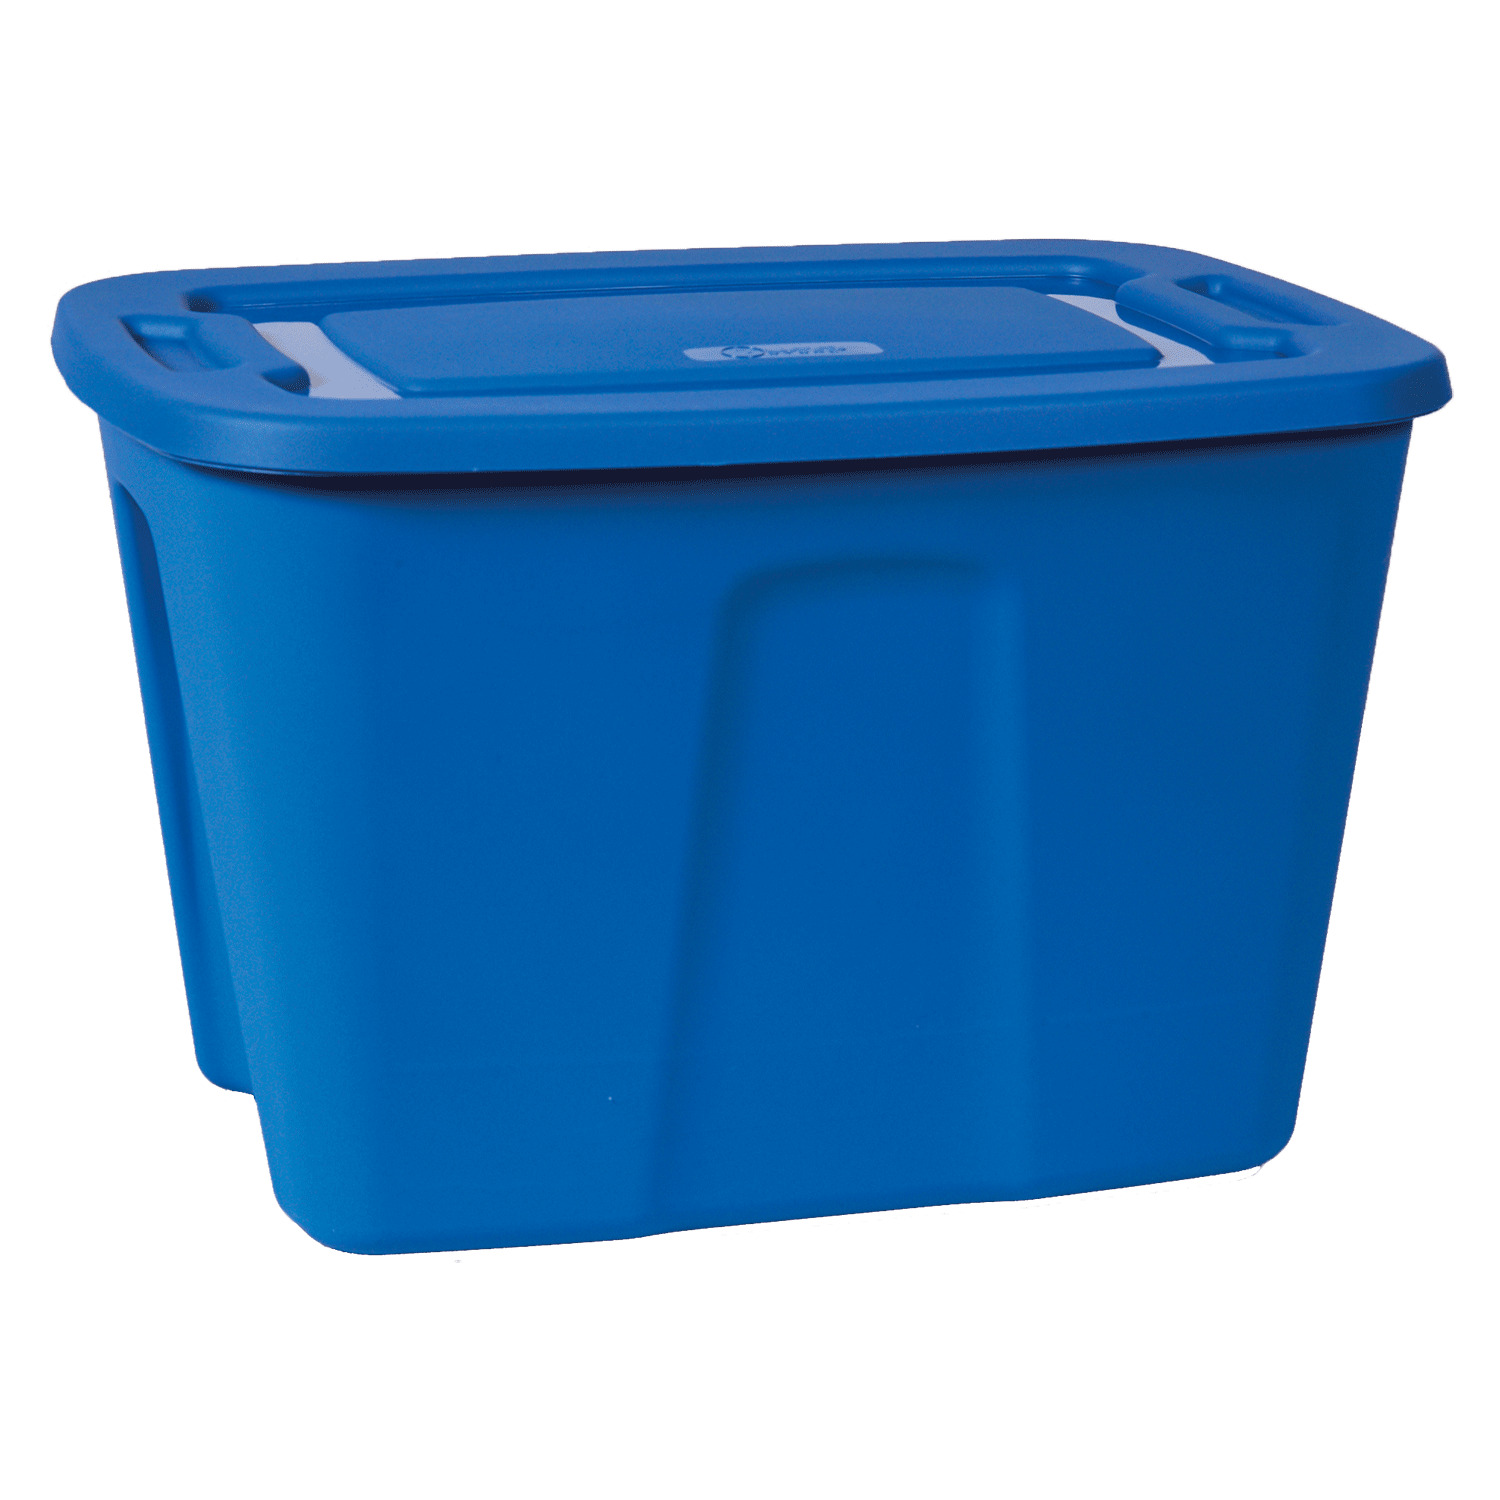 Blue plastic tote bin - 37L. Colour: blue